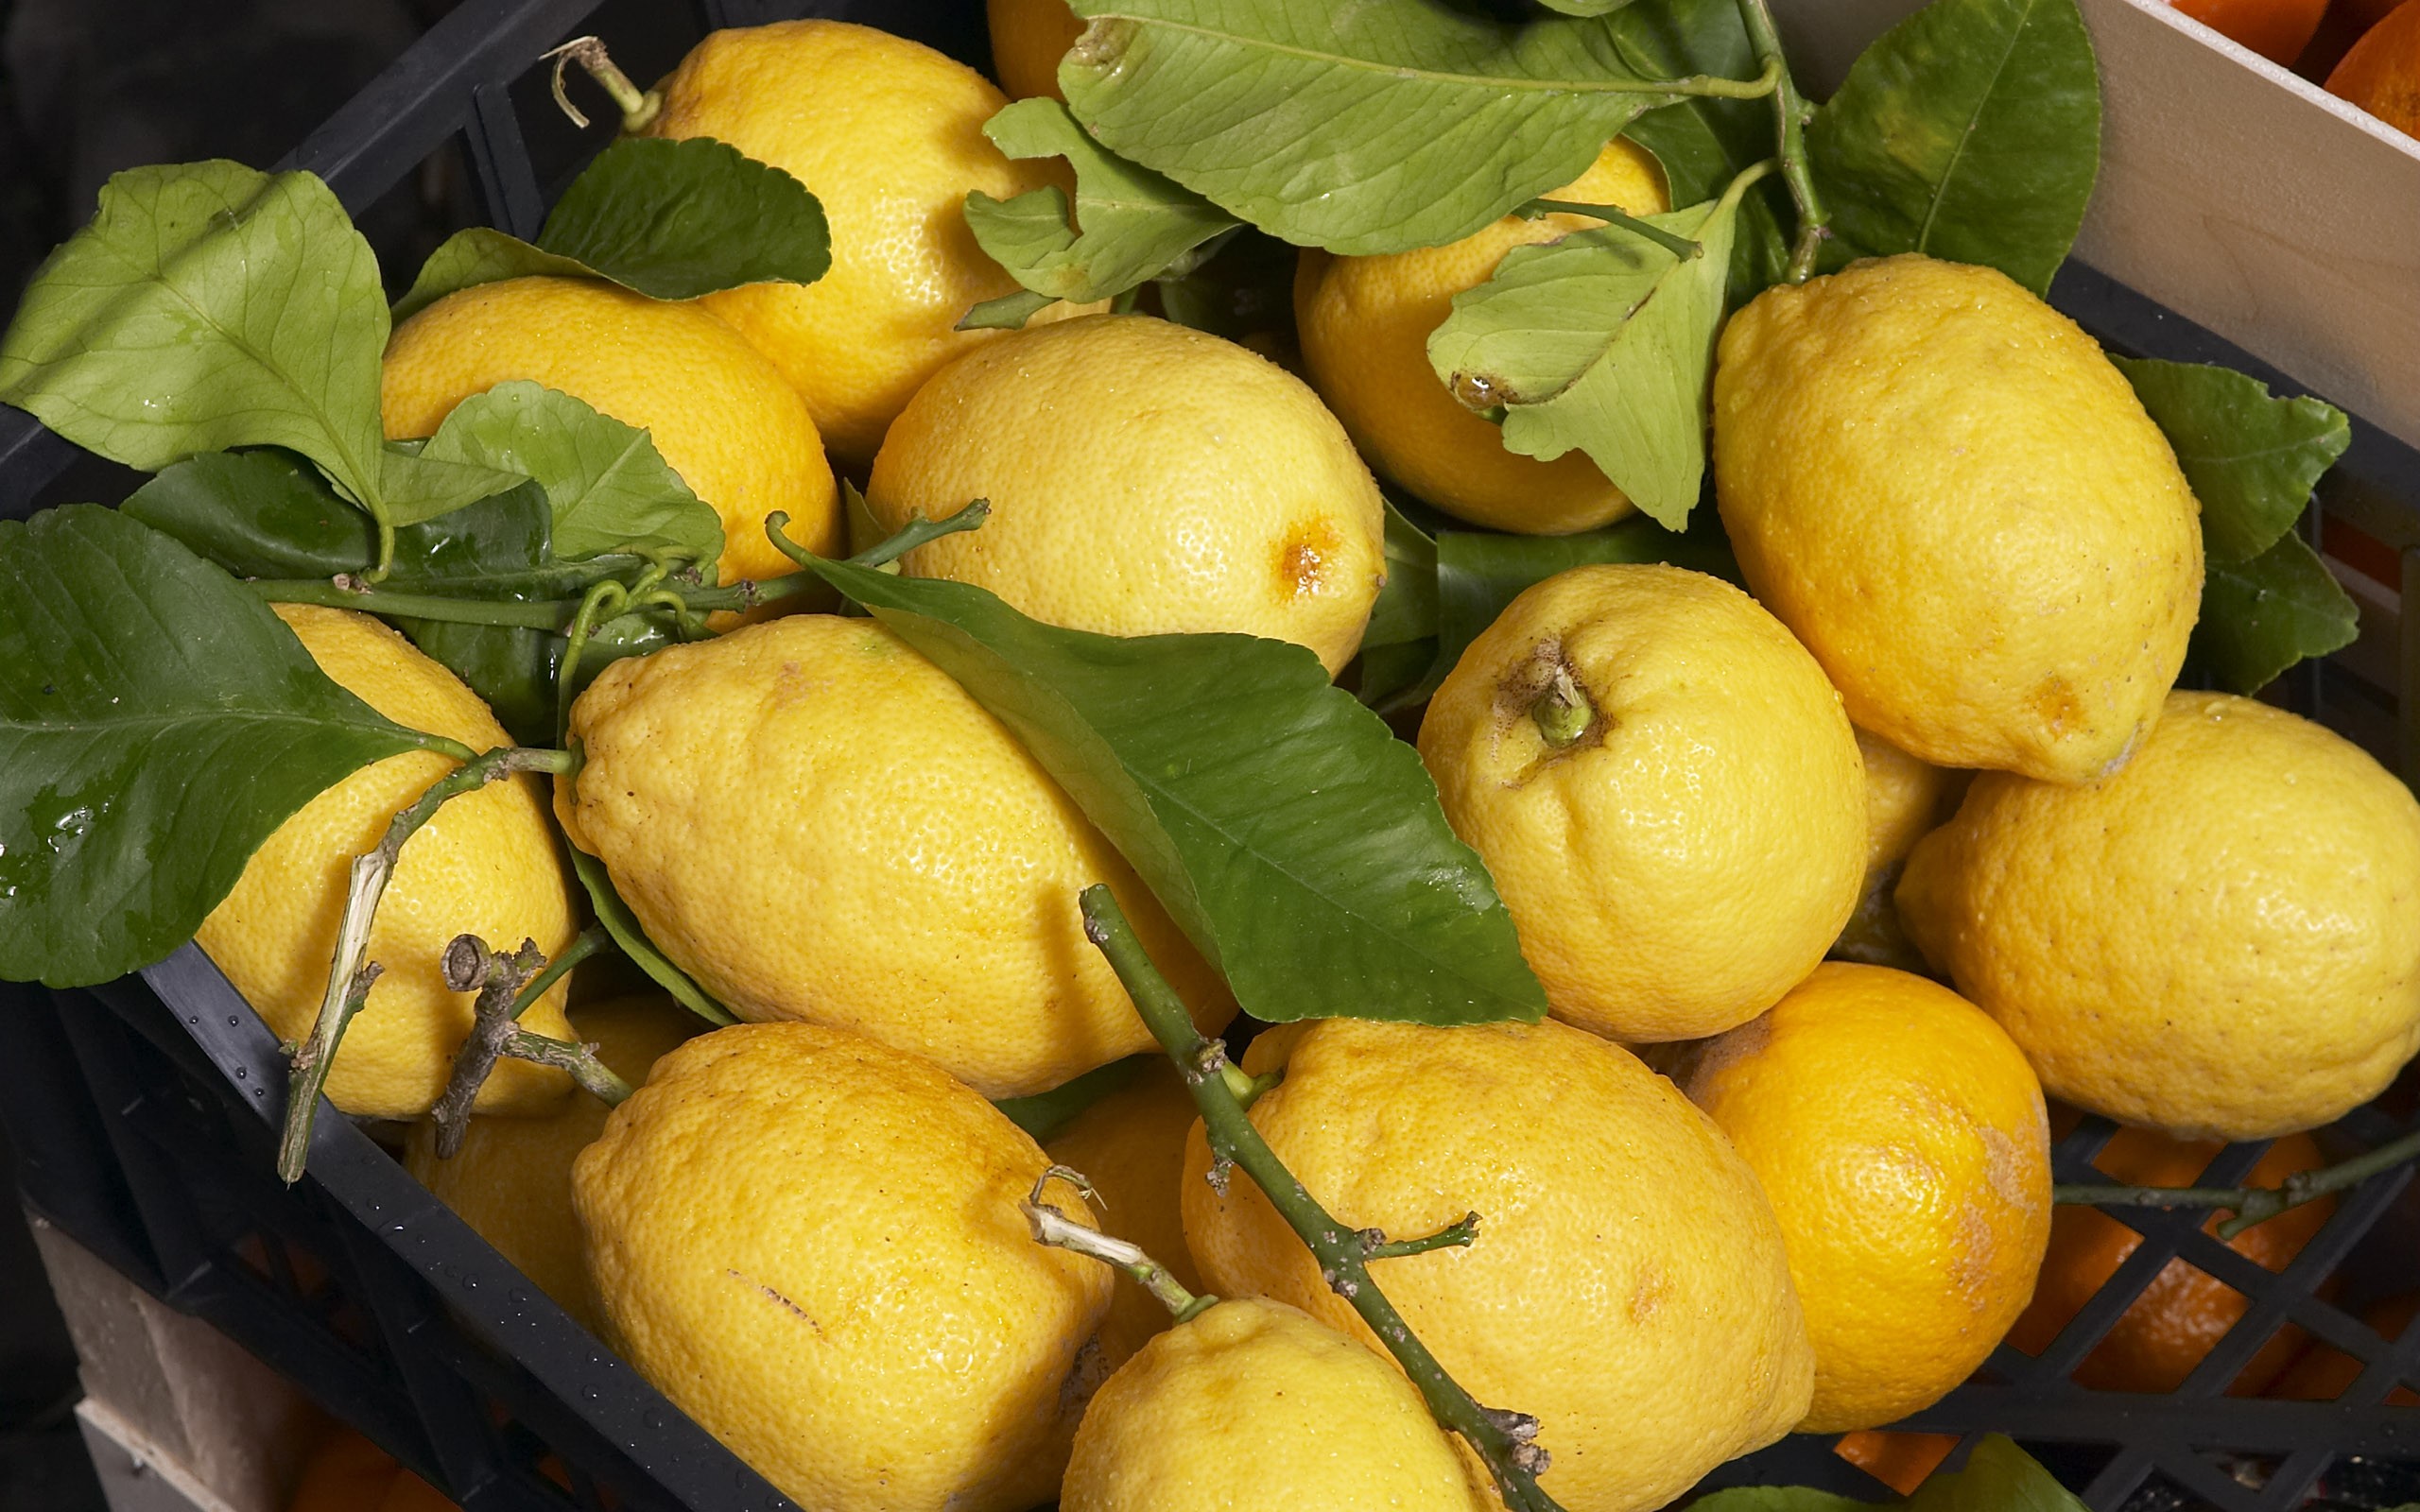 الليمون معالج فعال لبشرتك